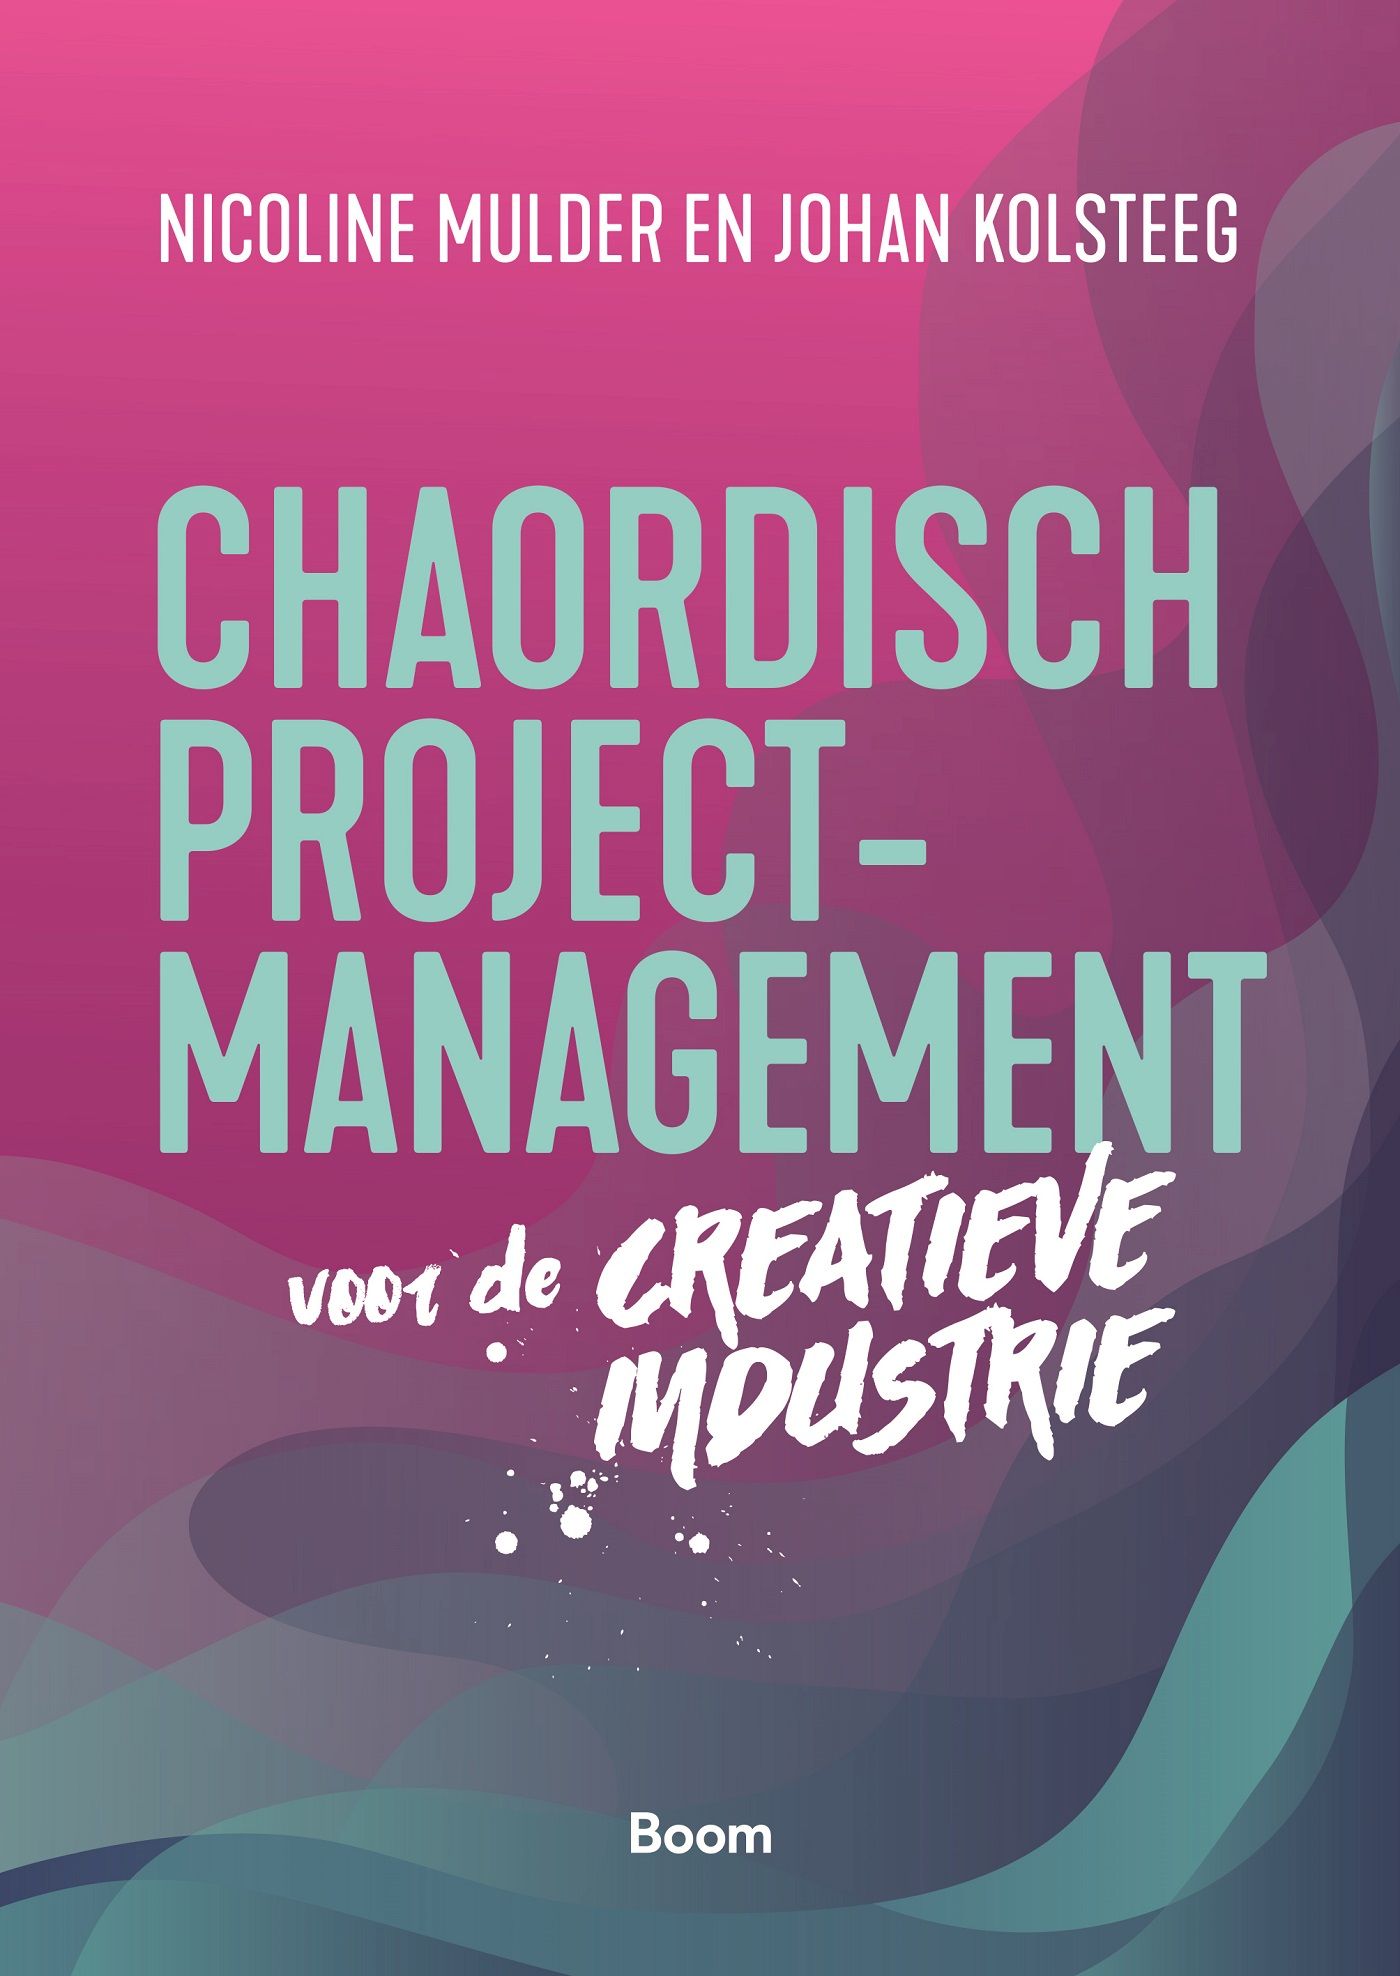 Chaordisch projectmanagement voor de creatieve industrie (Ebook)